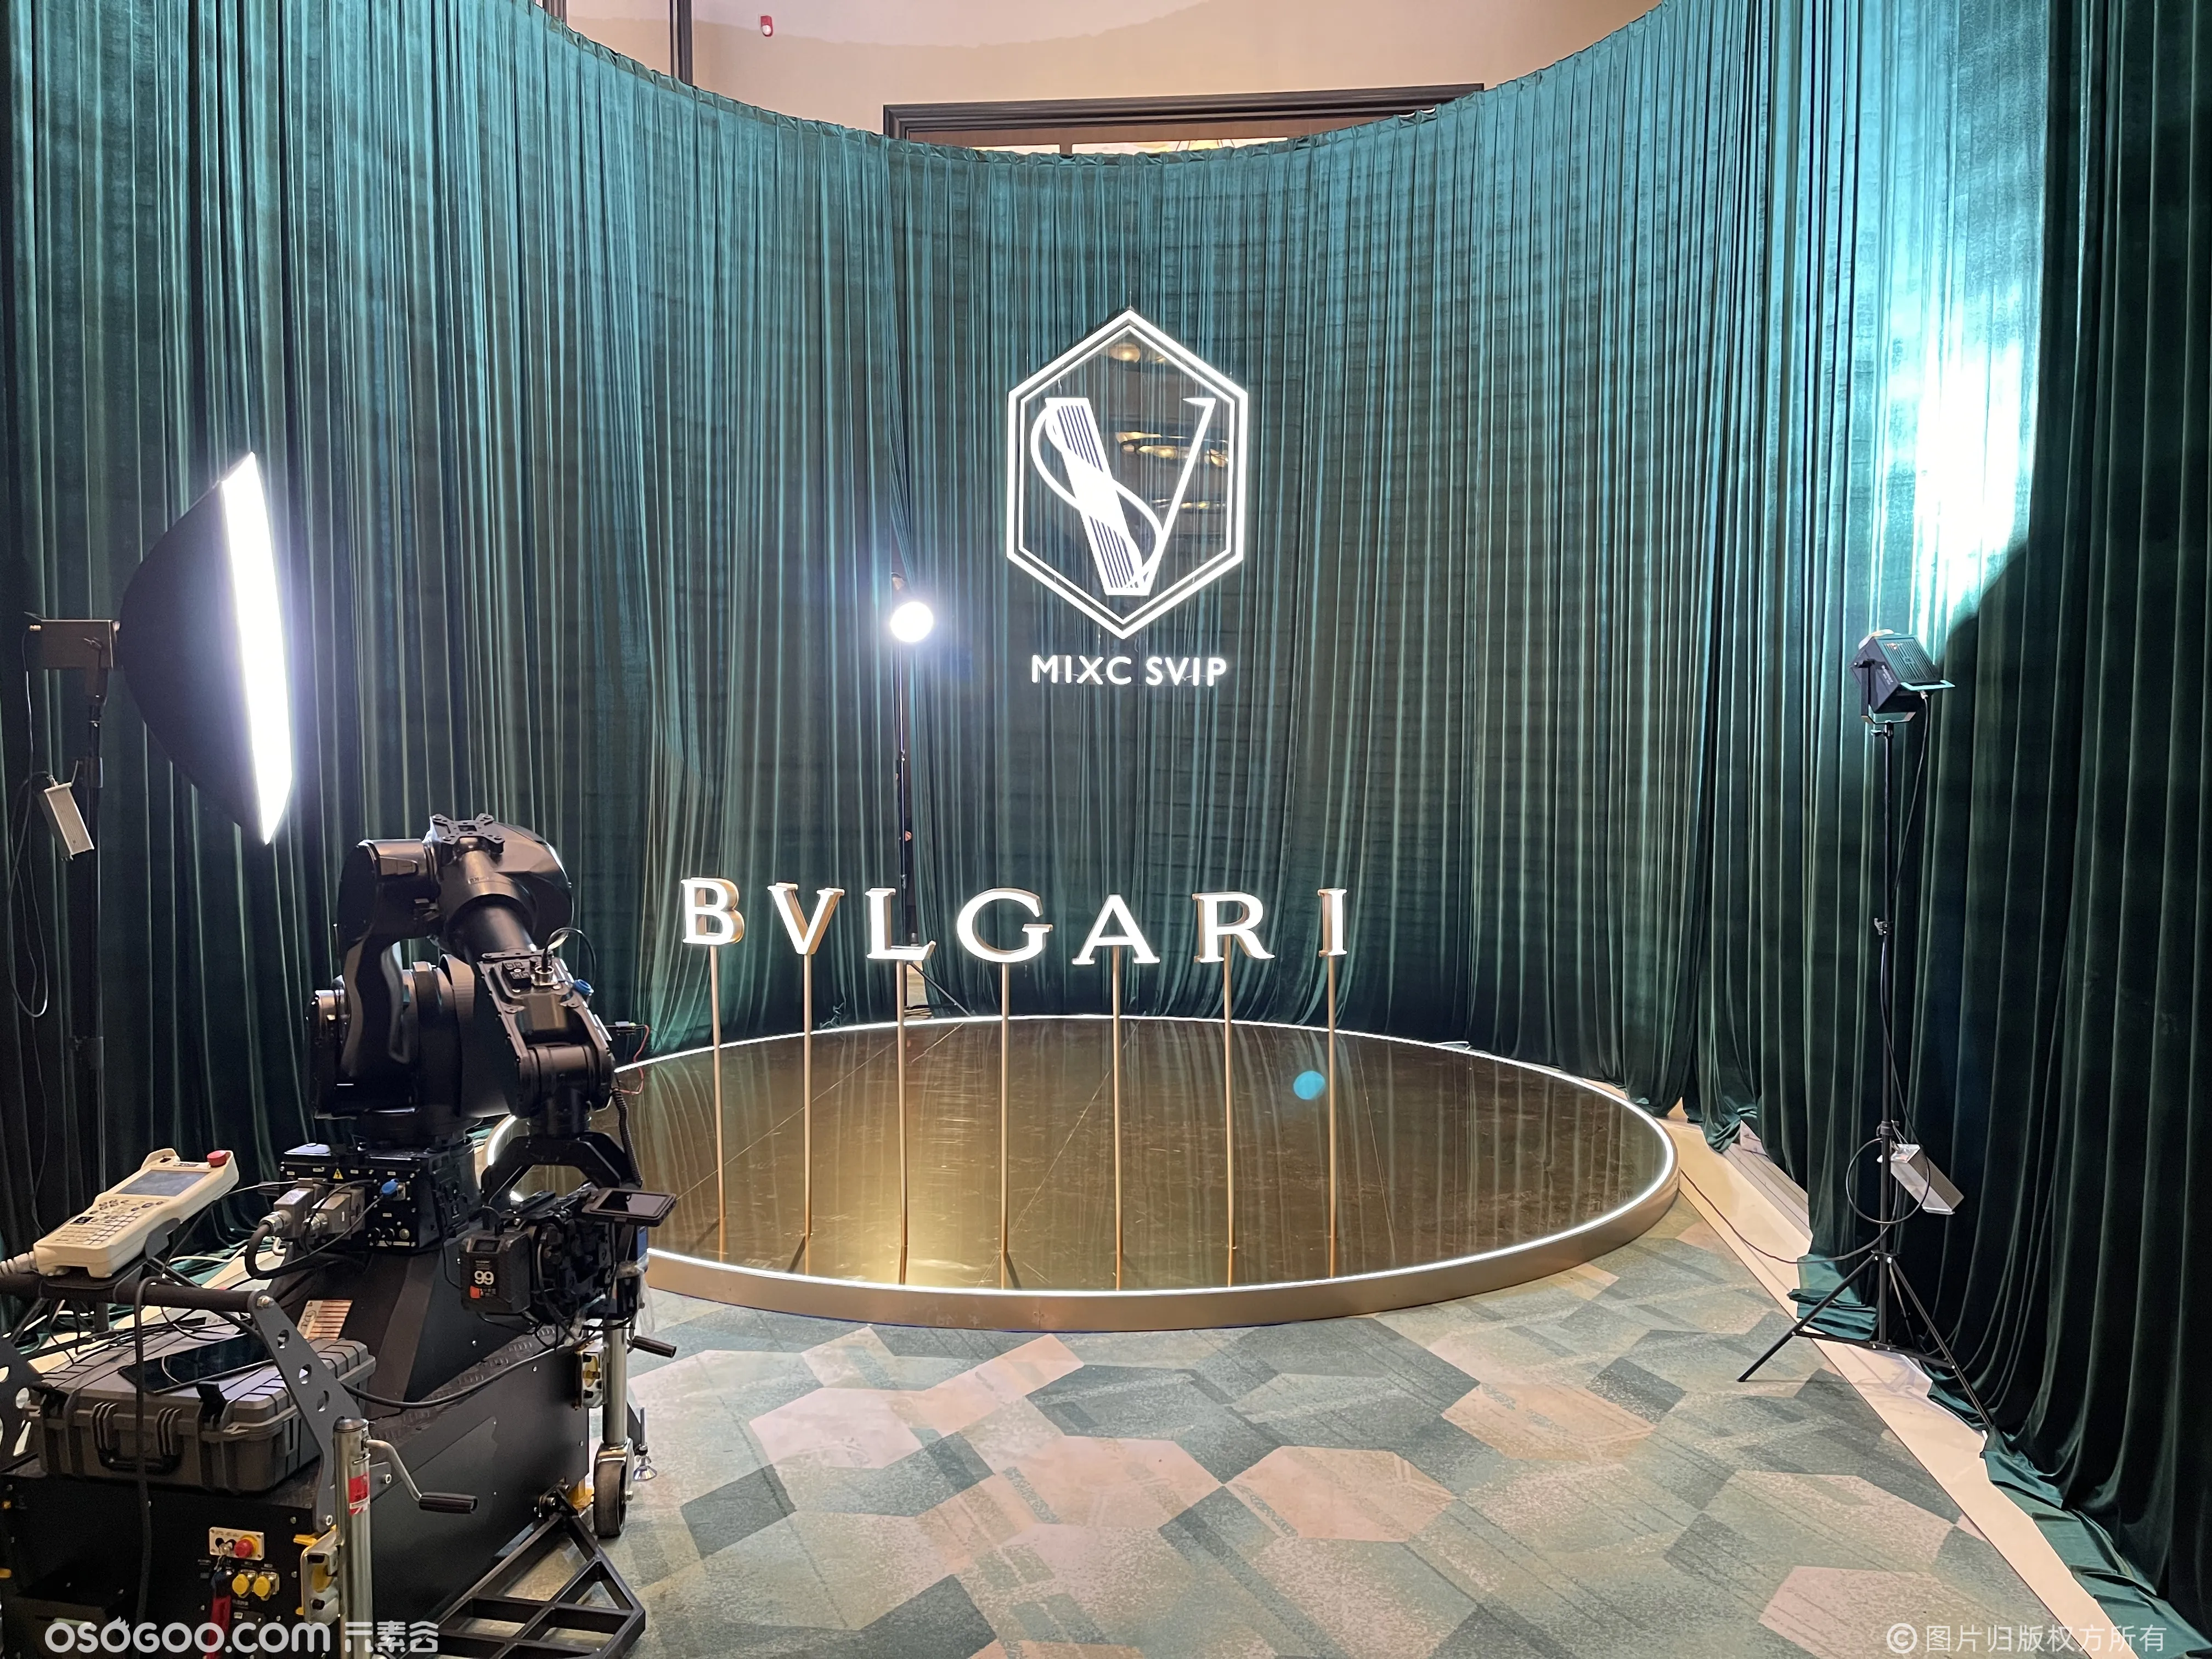 BVLGARI品牌活动/机械臂高速拍摄互动